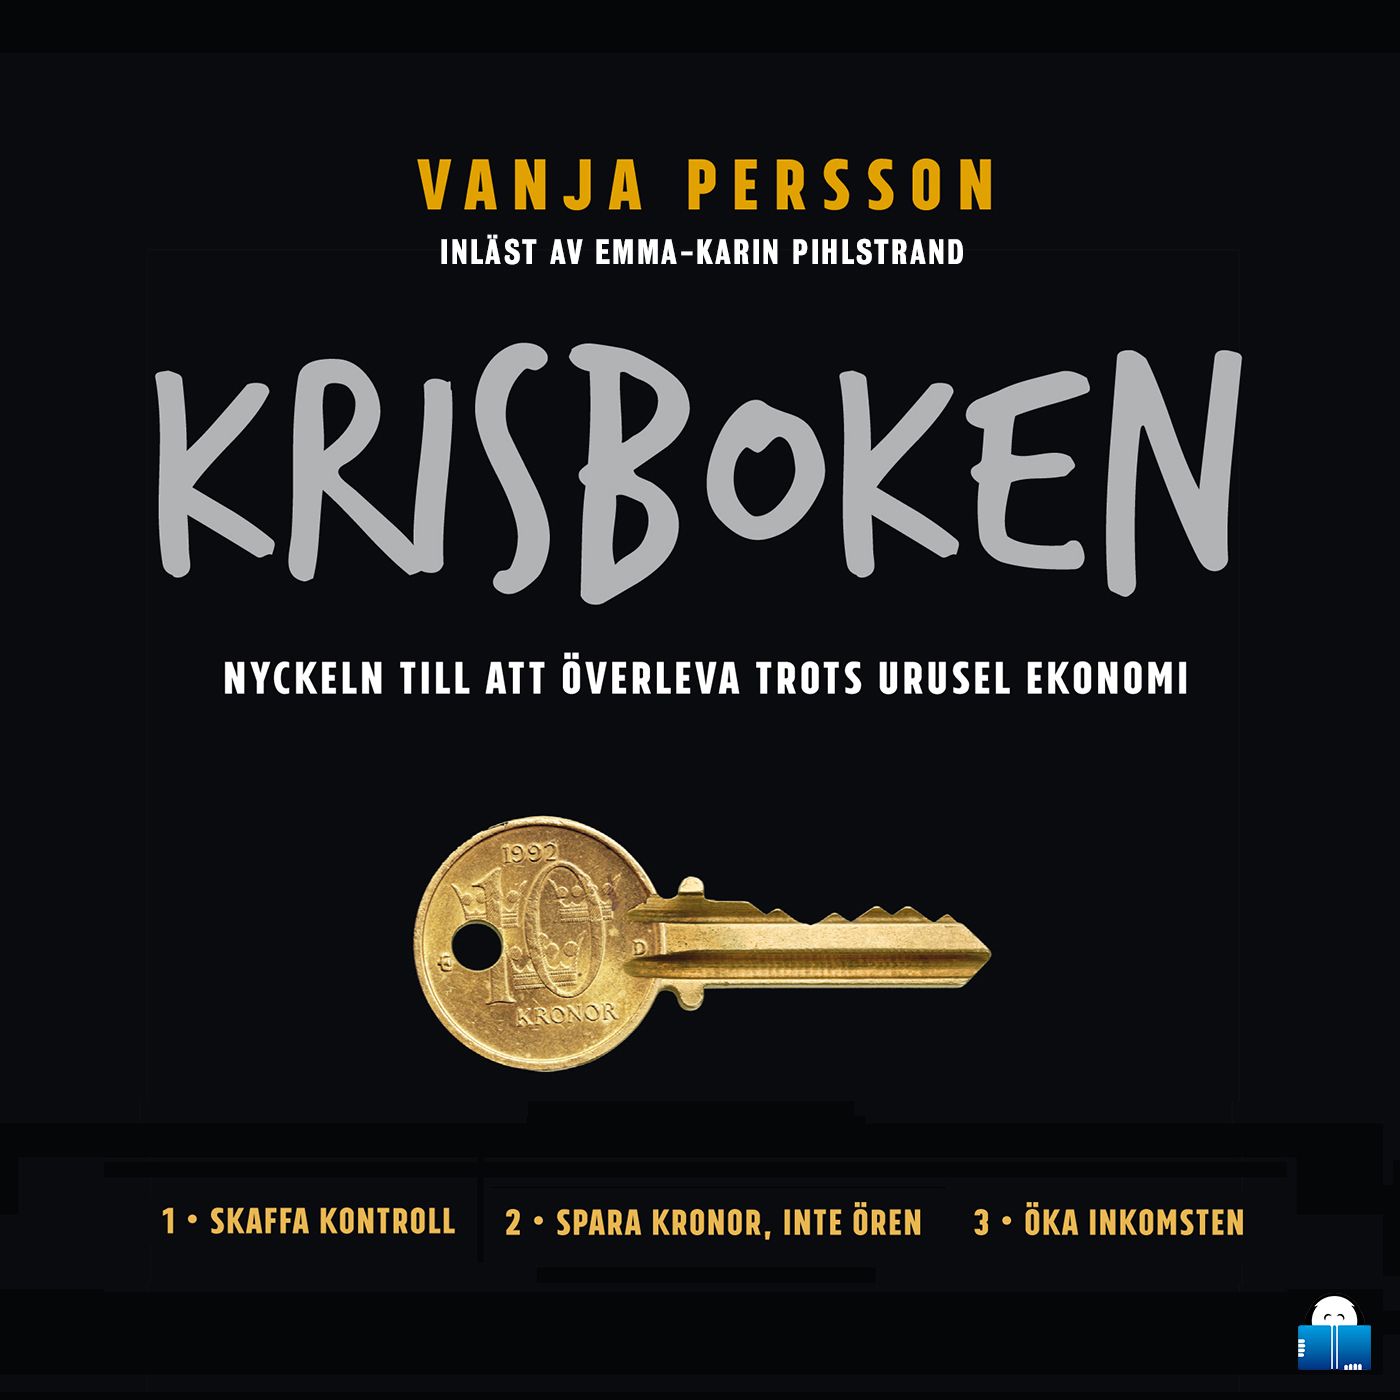 Krisboken, ljudbok av Vanja Persson